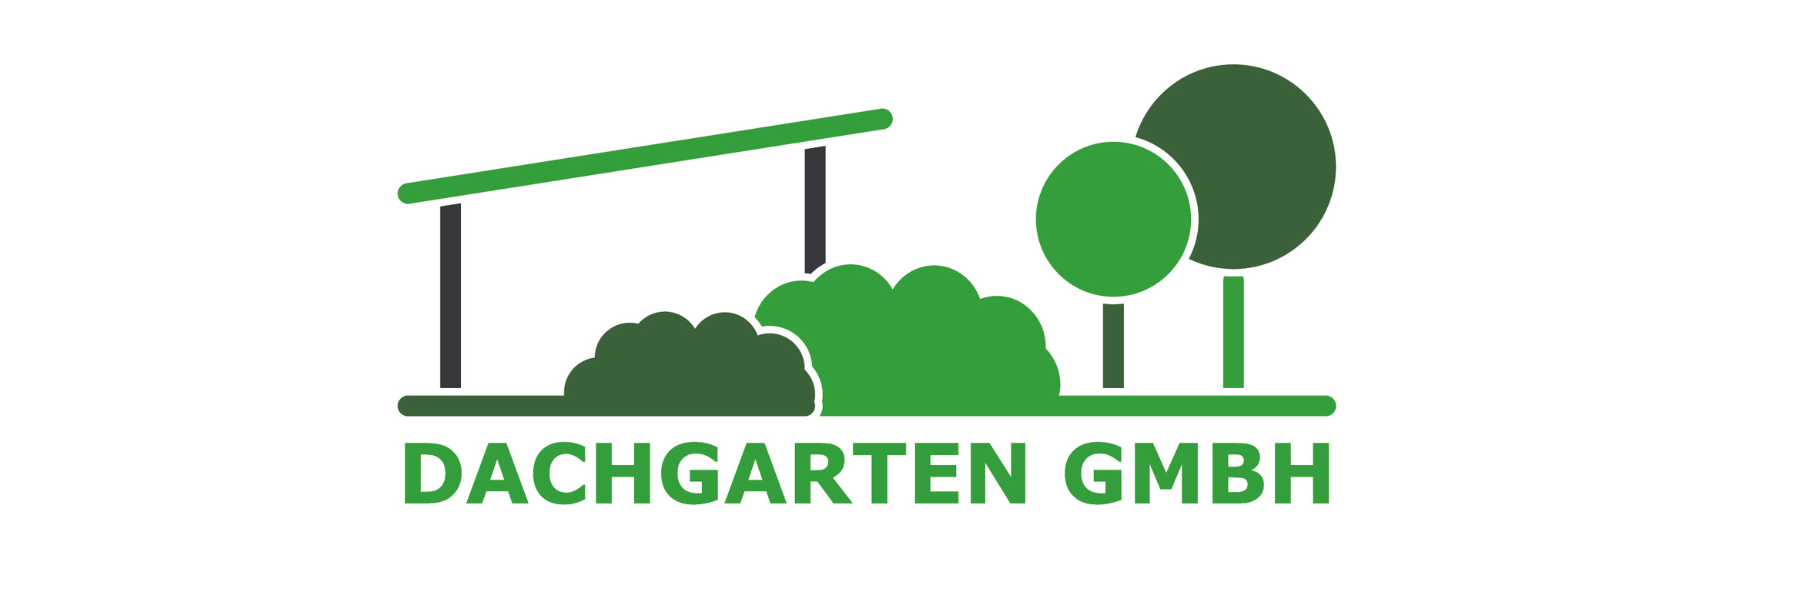 Dachgarten GmbH